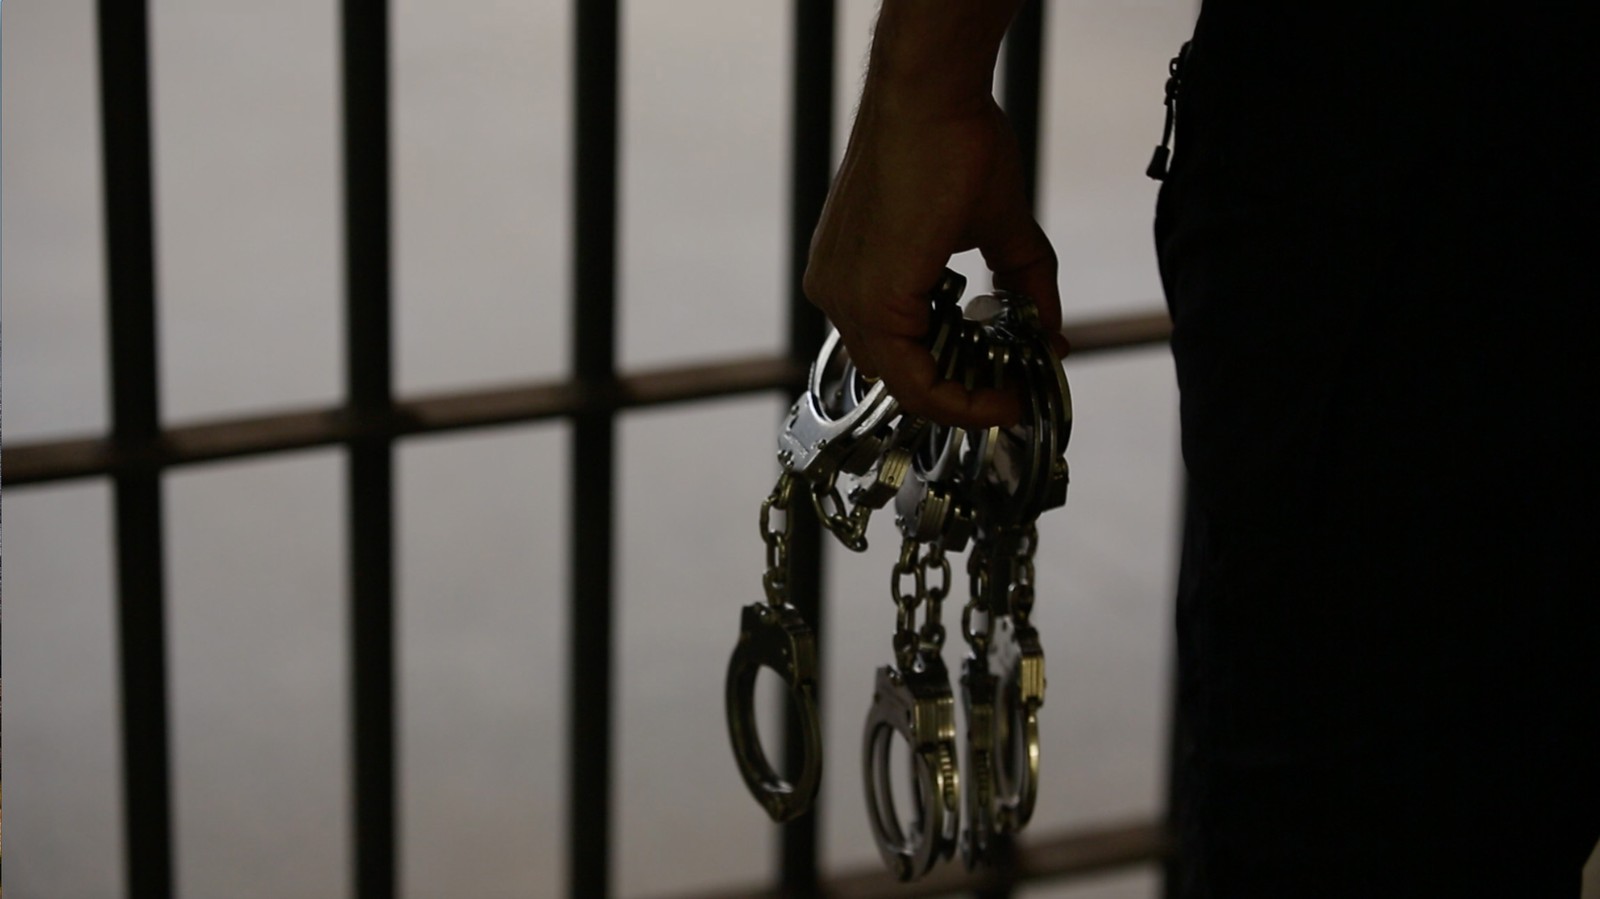 Ministério da Mulher, da Família e dos Direitos Humanos vai apurar denúncia de venda de sexo no Complexo Penitenciário da Papuda, no Distrito Federal (DF) — Foto: Daniel Marenco